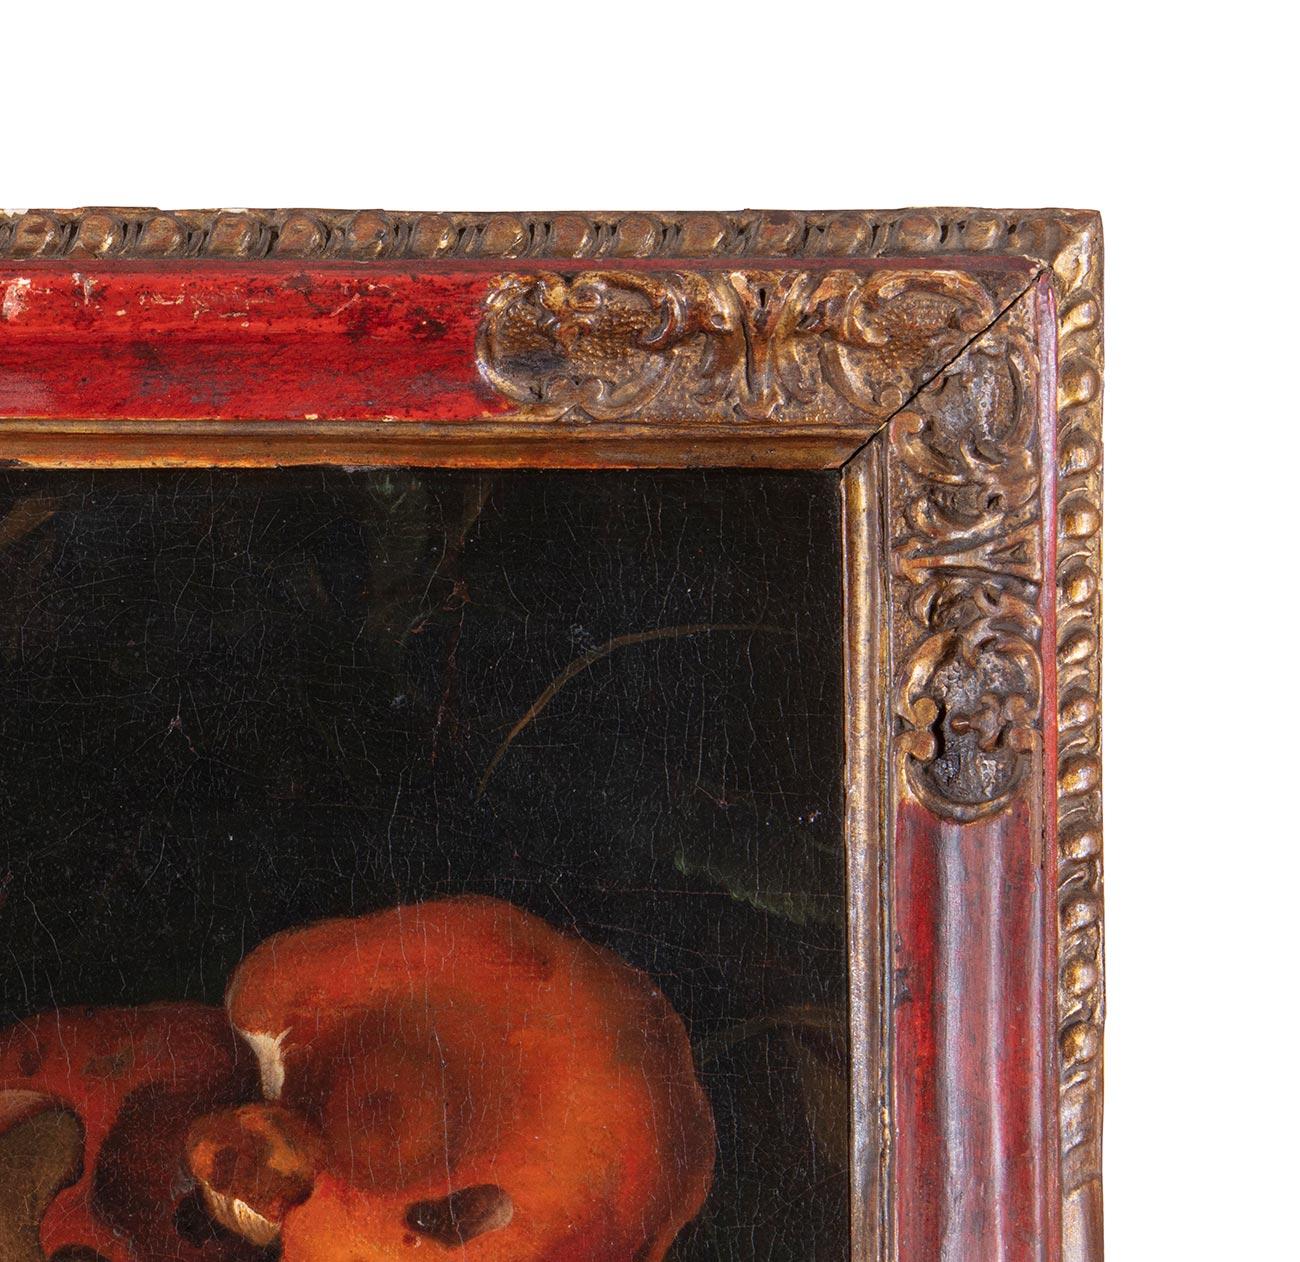 Nicolas Van Houbraken (Messine, 1668 - Pise, 1733)

Nature morte avec champignons

Huile sur toile, cm. 26 x 32 - avec cadre cm. 38,5 x 33,5
Cadre en cassetta ancien fait de bois sculpté et de pièces laquées cramoisi

Particulièrement apprécié à la